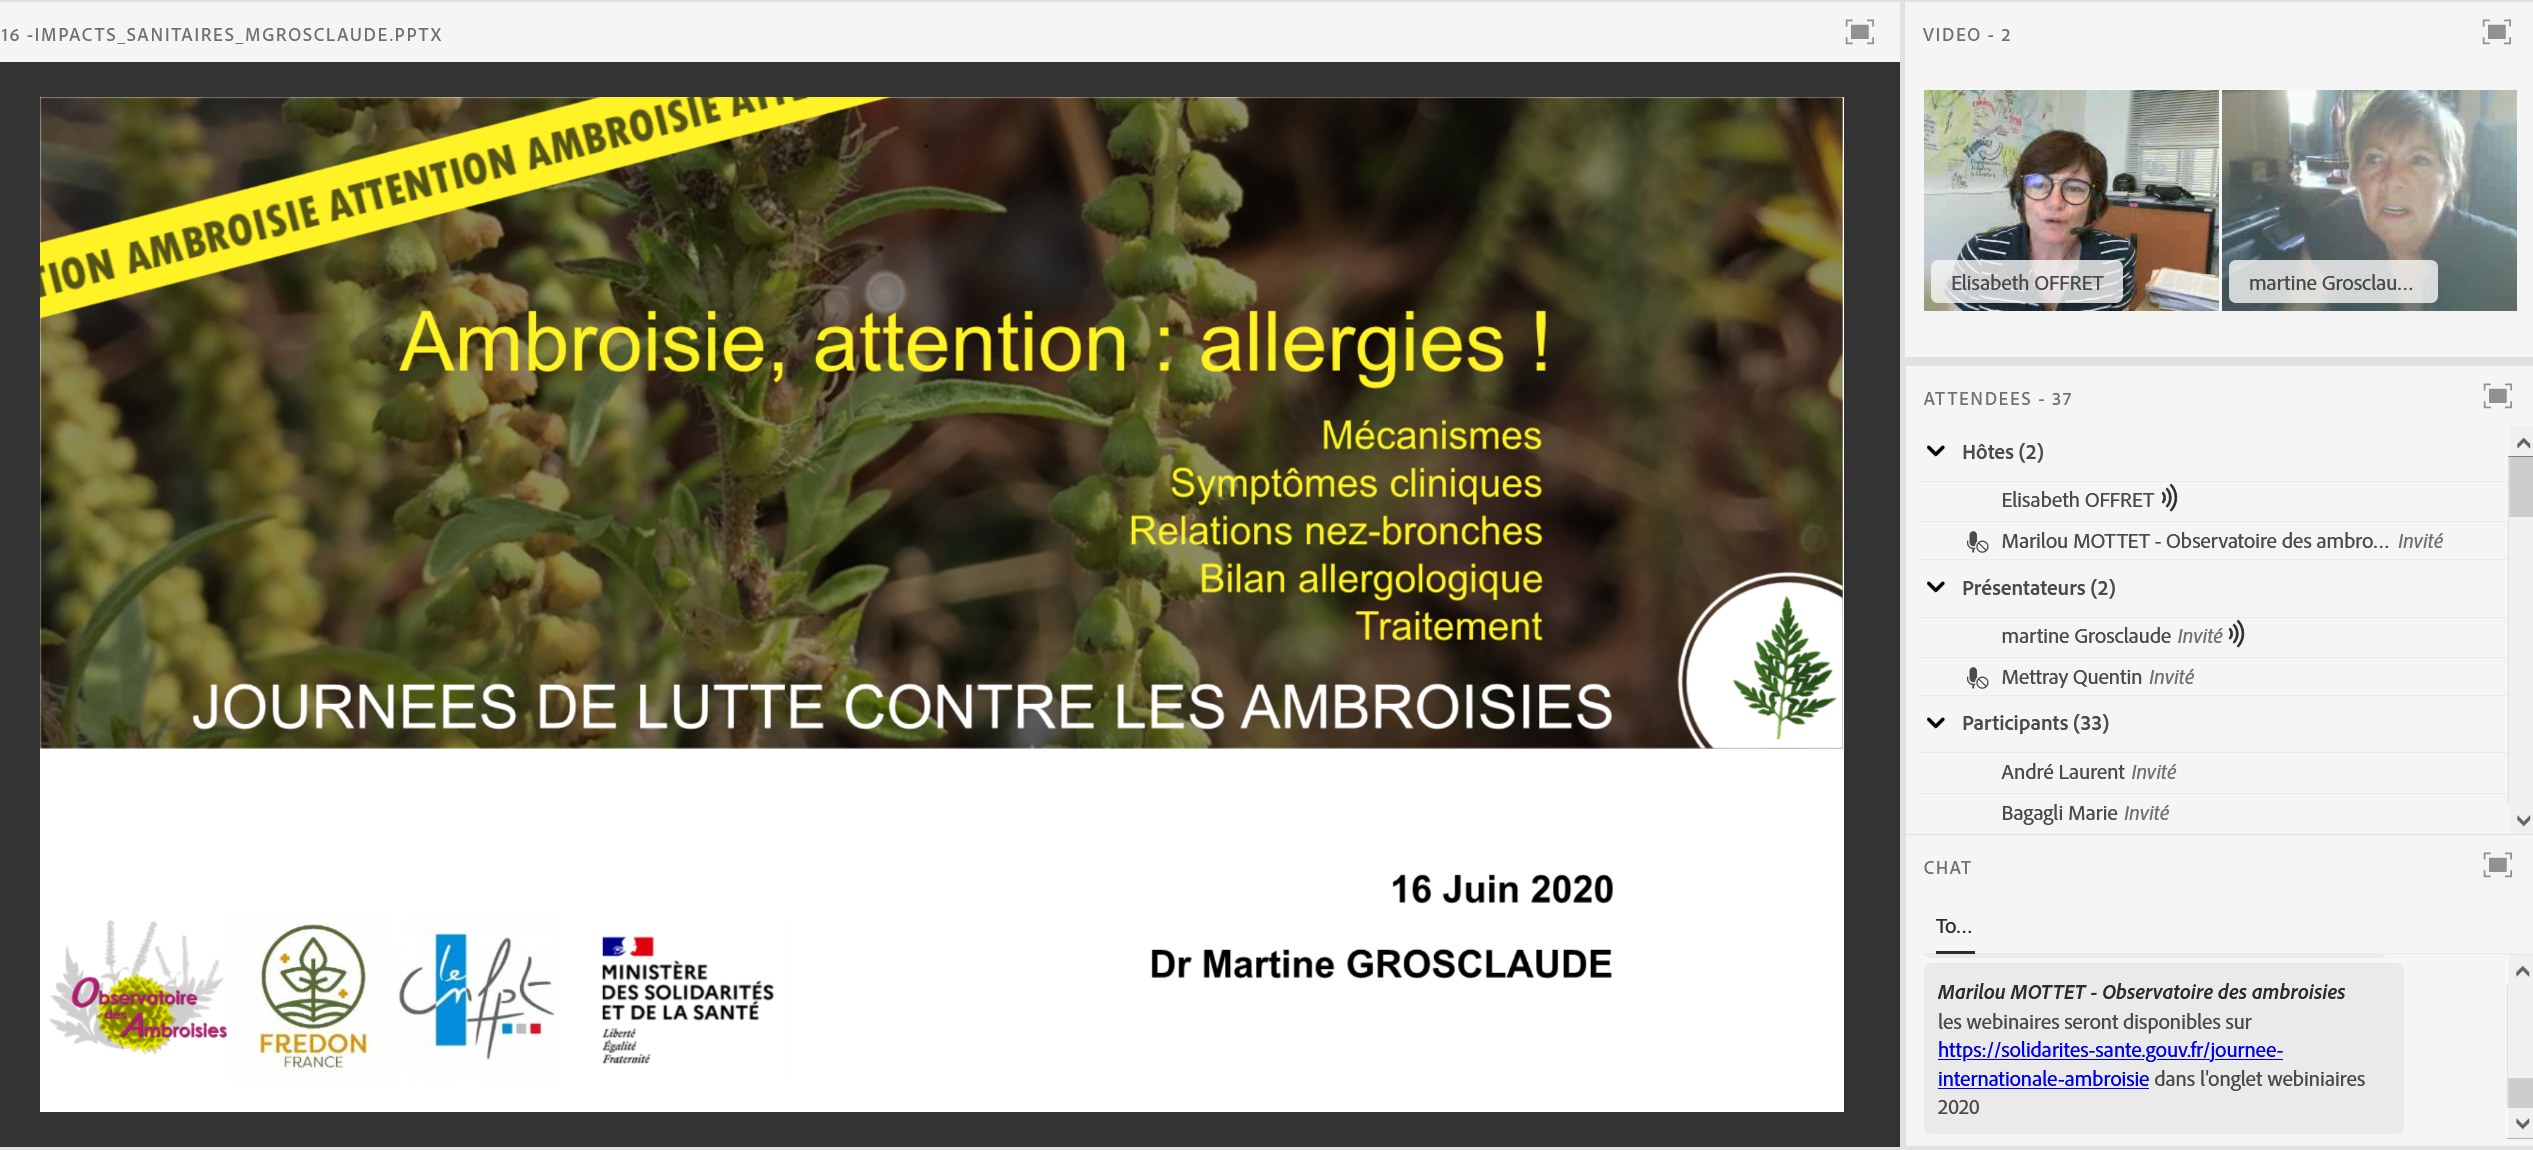 Capture d'écran extraite du webinaire « Ambroisie, attention : allergies ! » de Martine Grosclaude